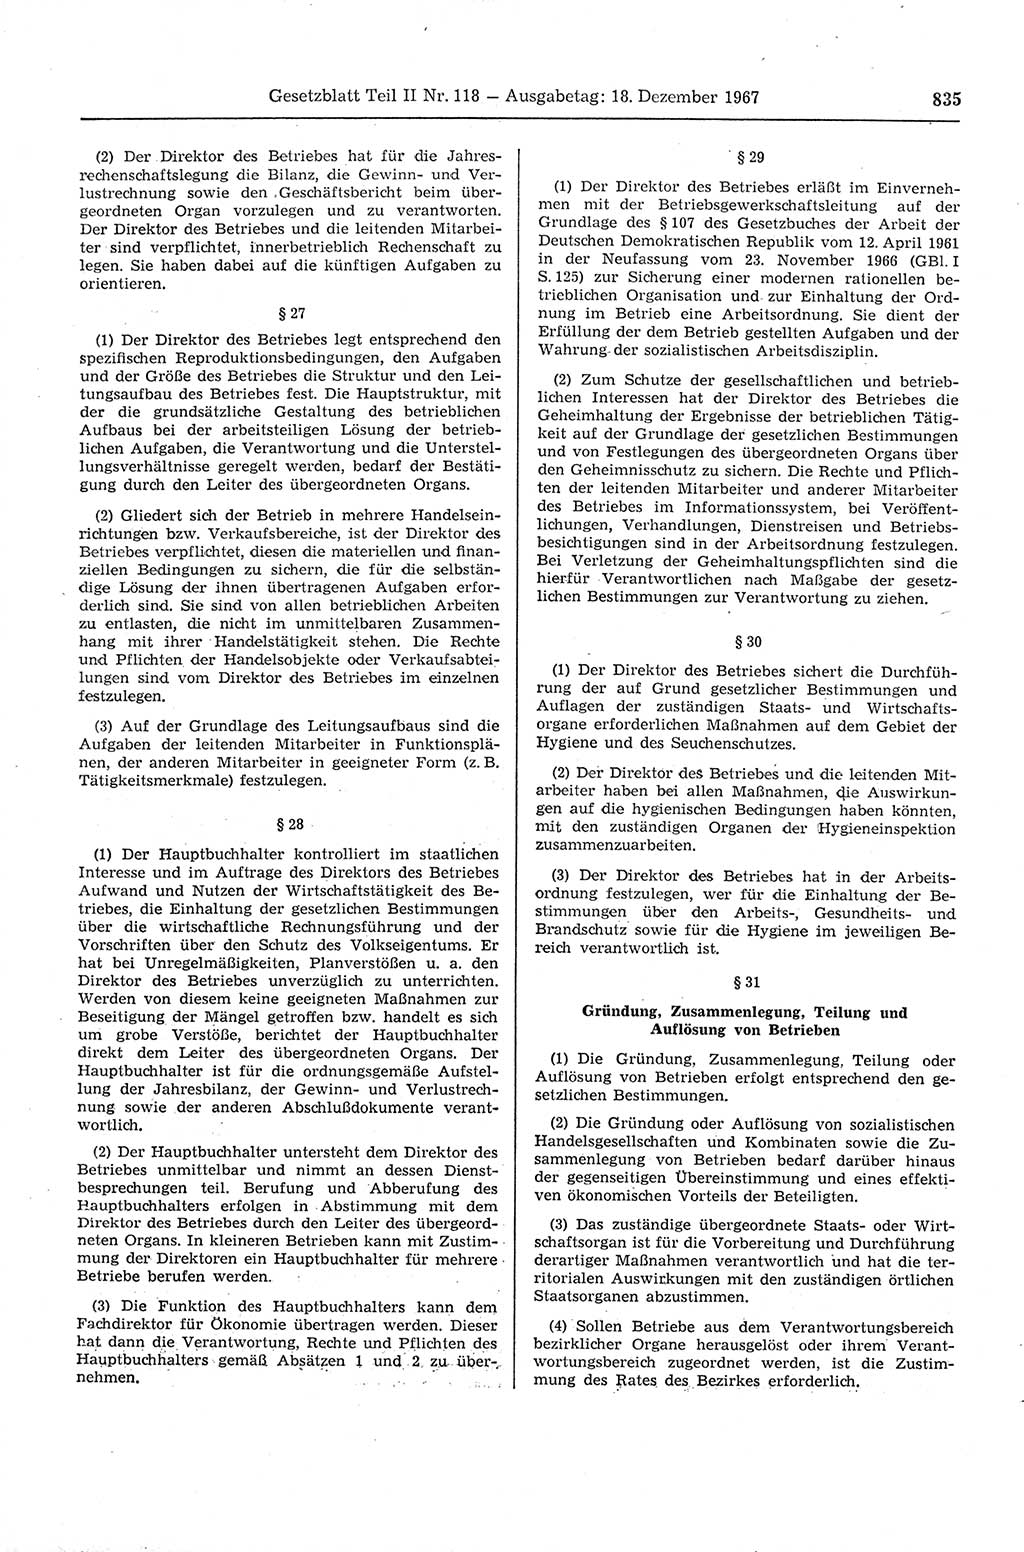 Gesetzblatt (GBl.) der Deutschen Demokratischen Republik (DDR) Teil ⅠⅠ 1967, Seite 835 (GBl. DDR ⅠⅠ 1967, S. 835)